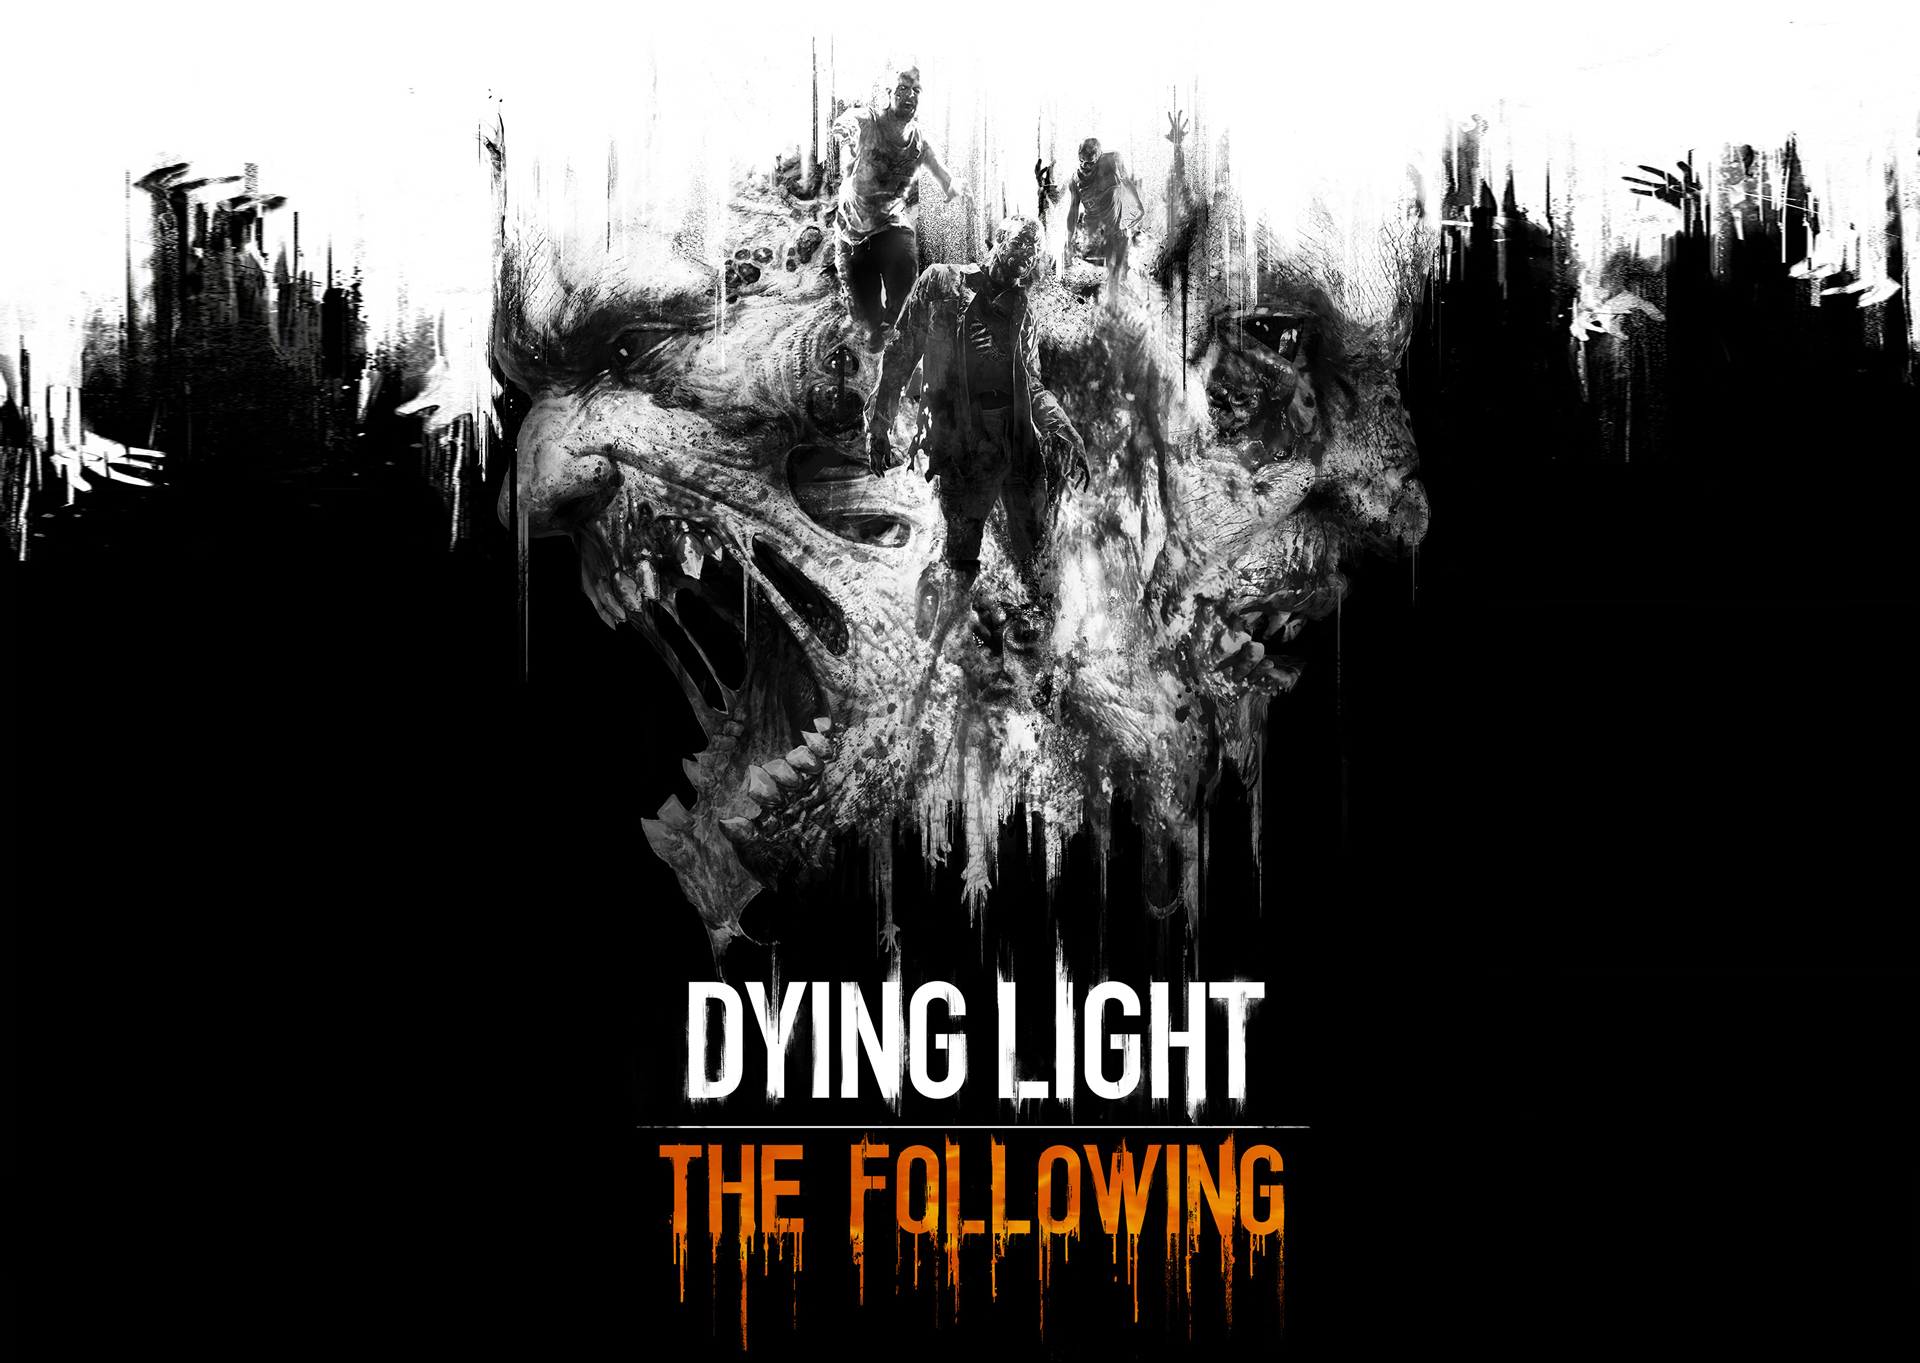 Dying light 1.12.0 dev menu